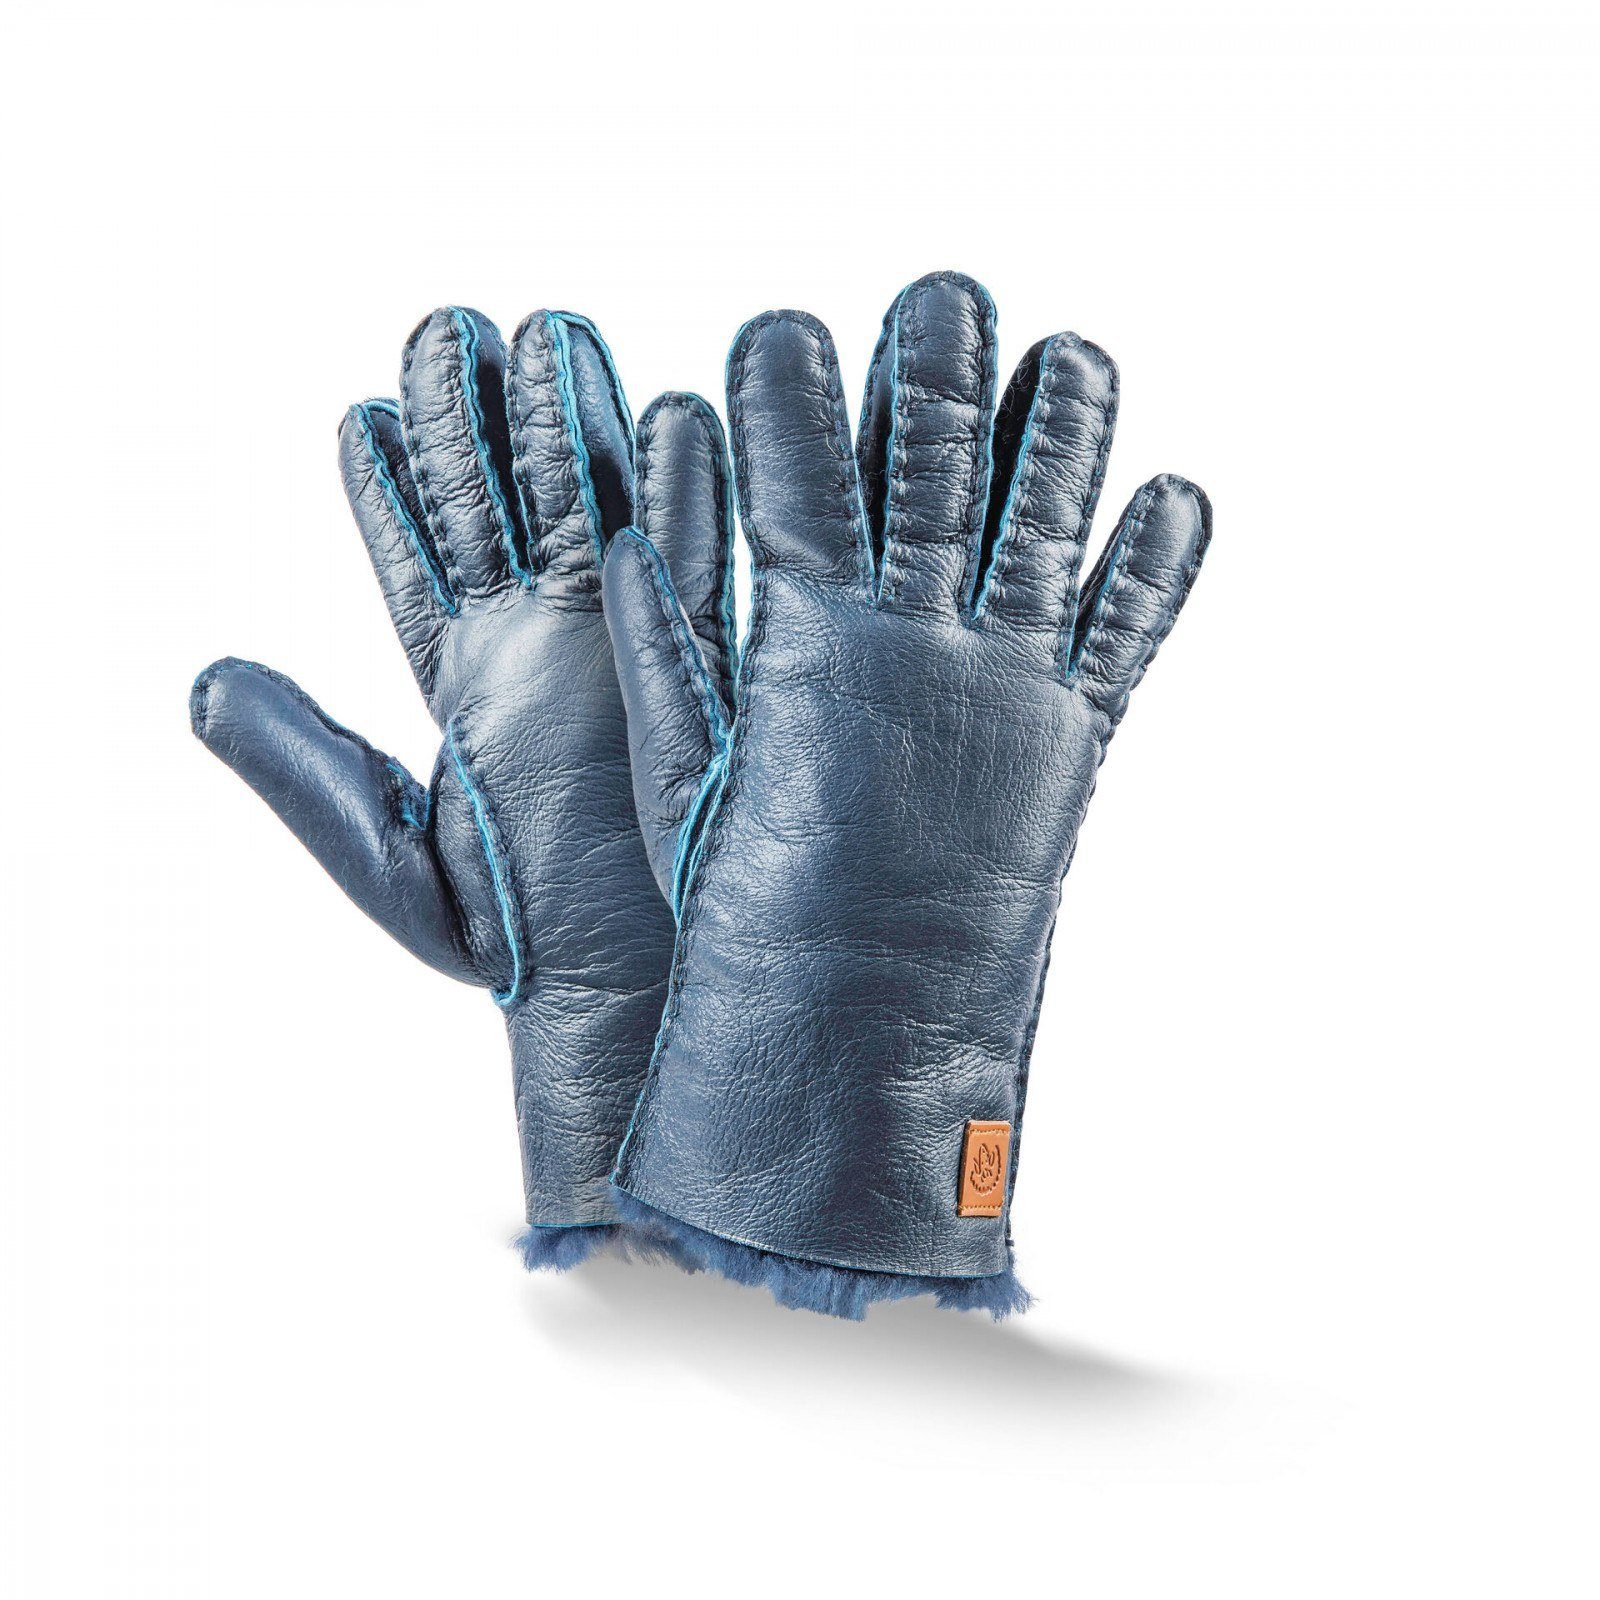 Fellhof Lederhandschuhe Lammfell Kinder-Handschuhe Leder-Handschuh 4-5,5 blau Trend Kids